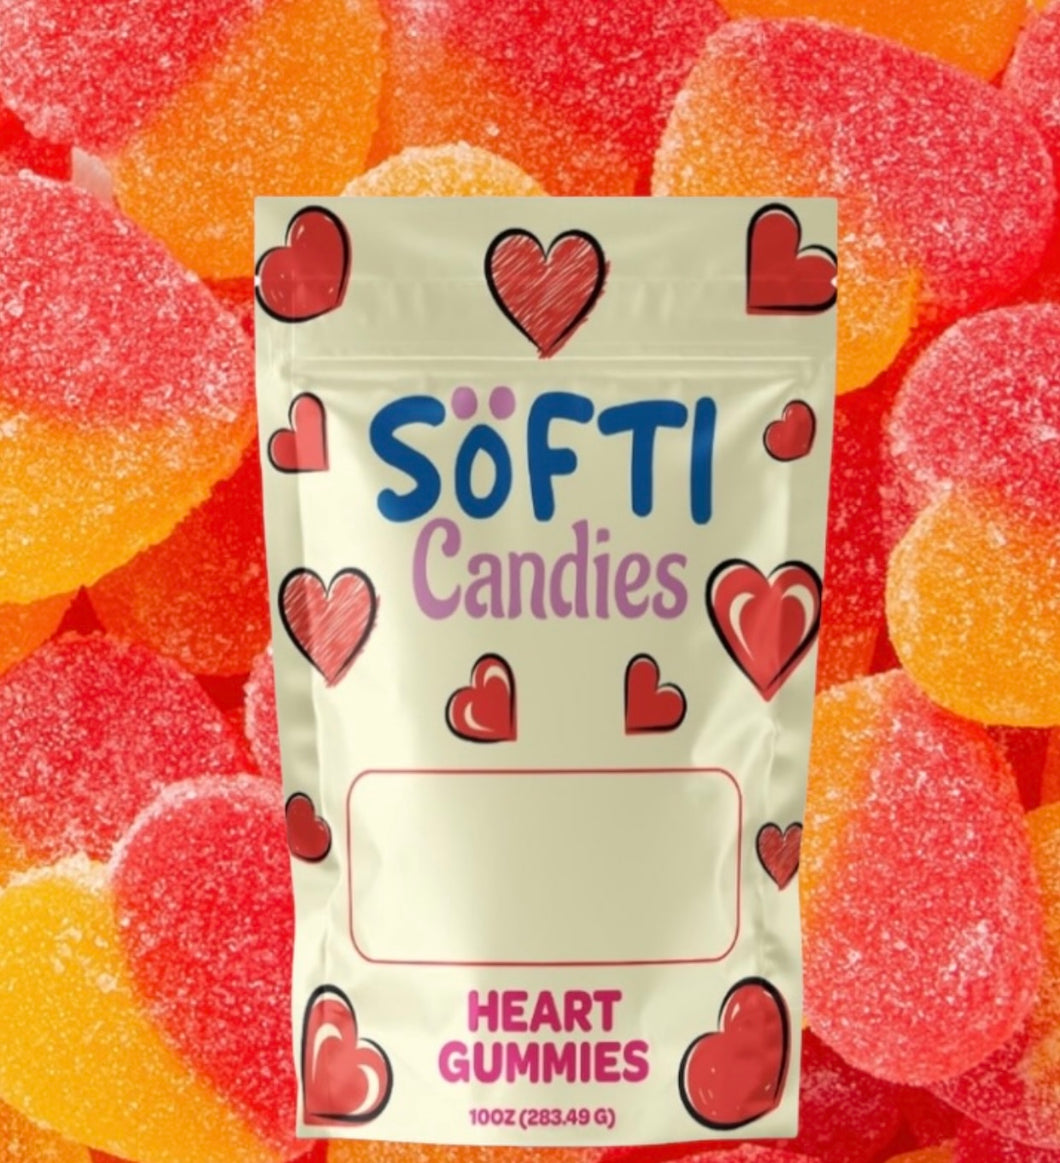 Softi: Peachy Heart Gummies 10oz